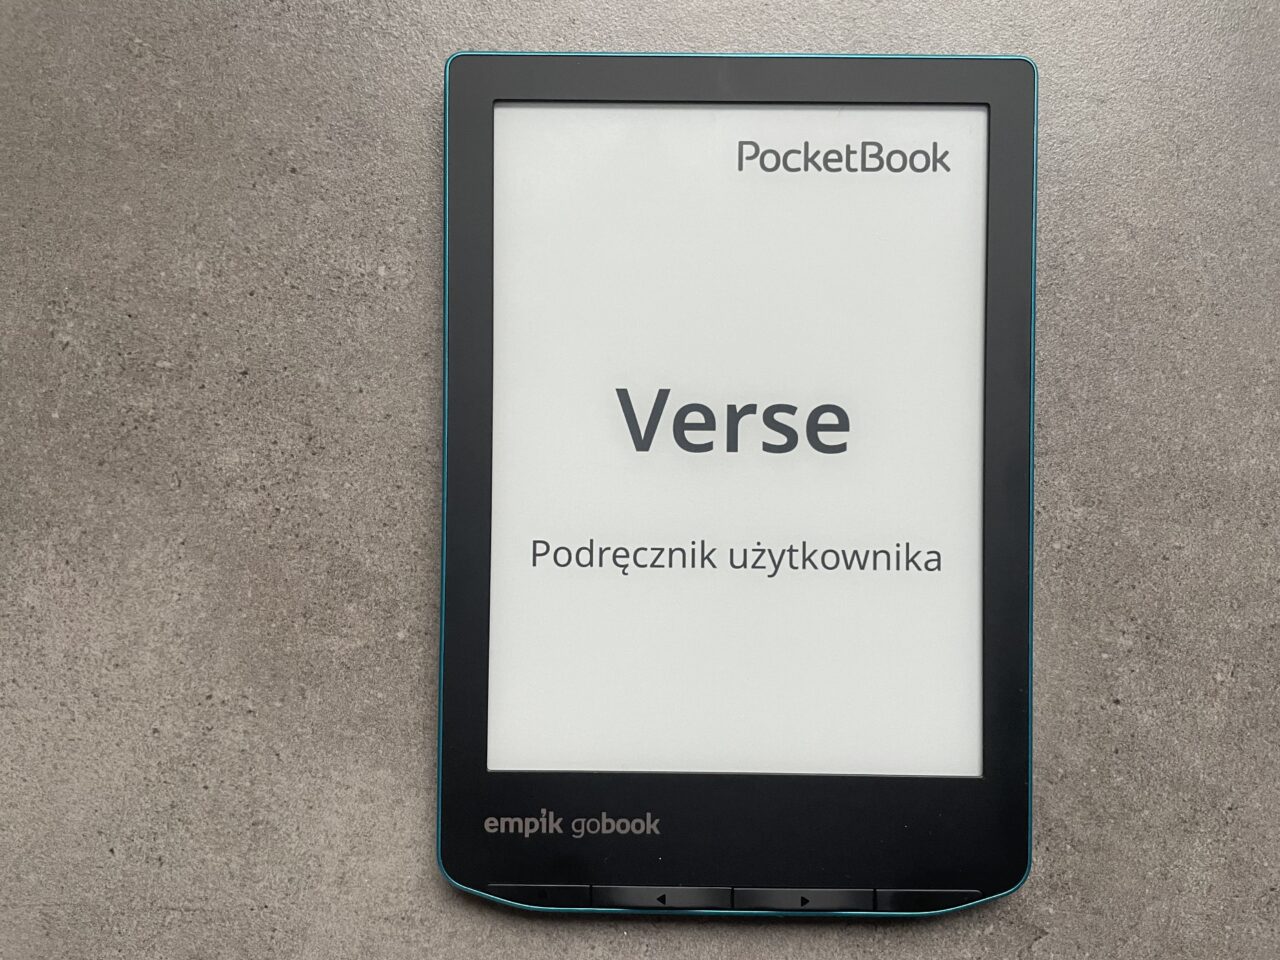 Czytnik ebooków marki PocketBook leżący na szarym blacie, wyświetlający stronę tytułową podręcznika użytkownika z napisem "Verse".